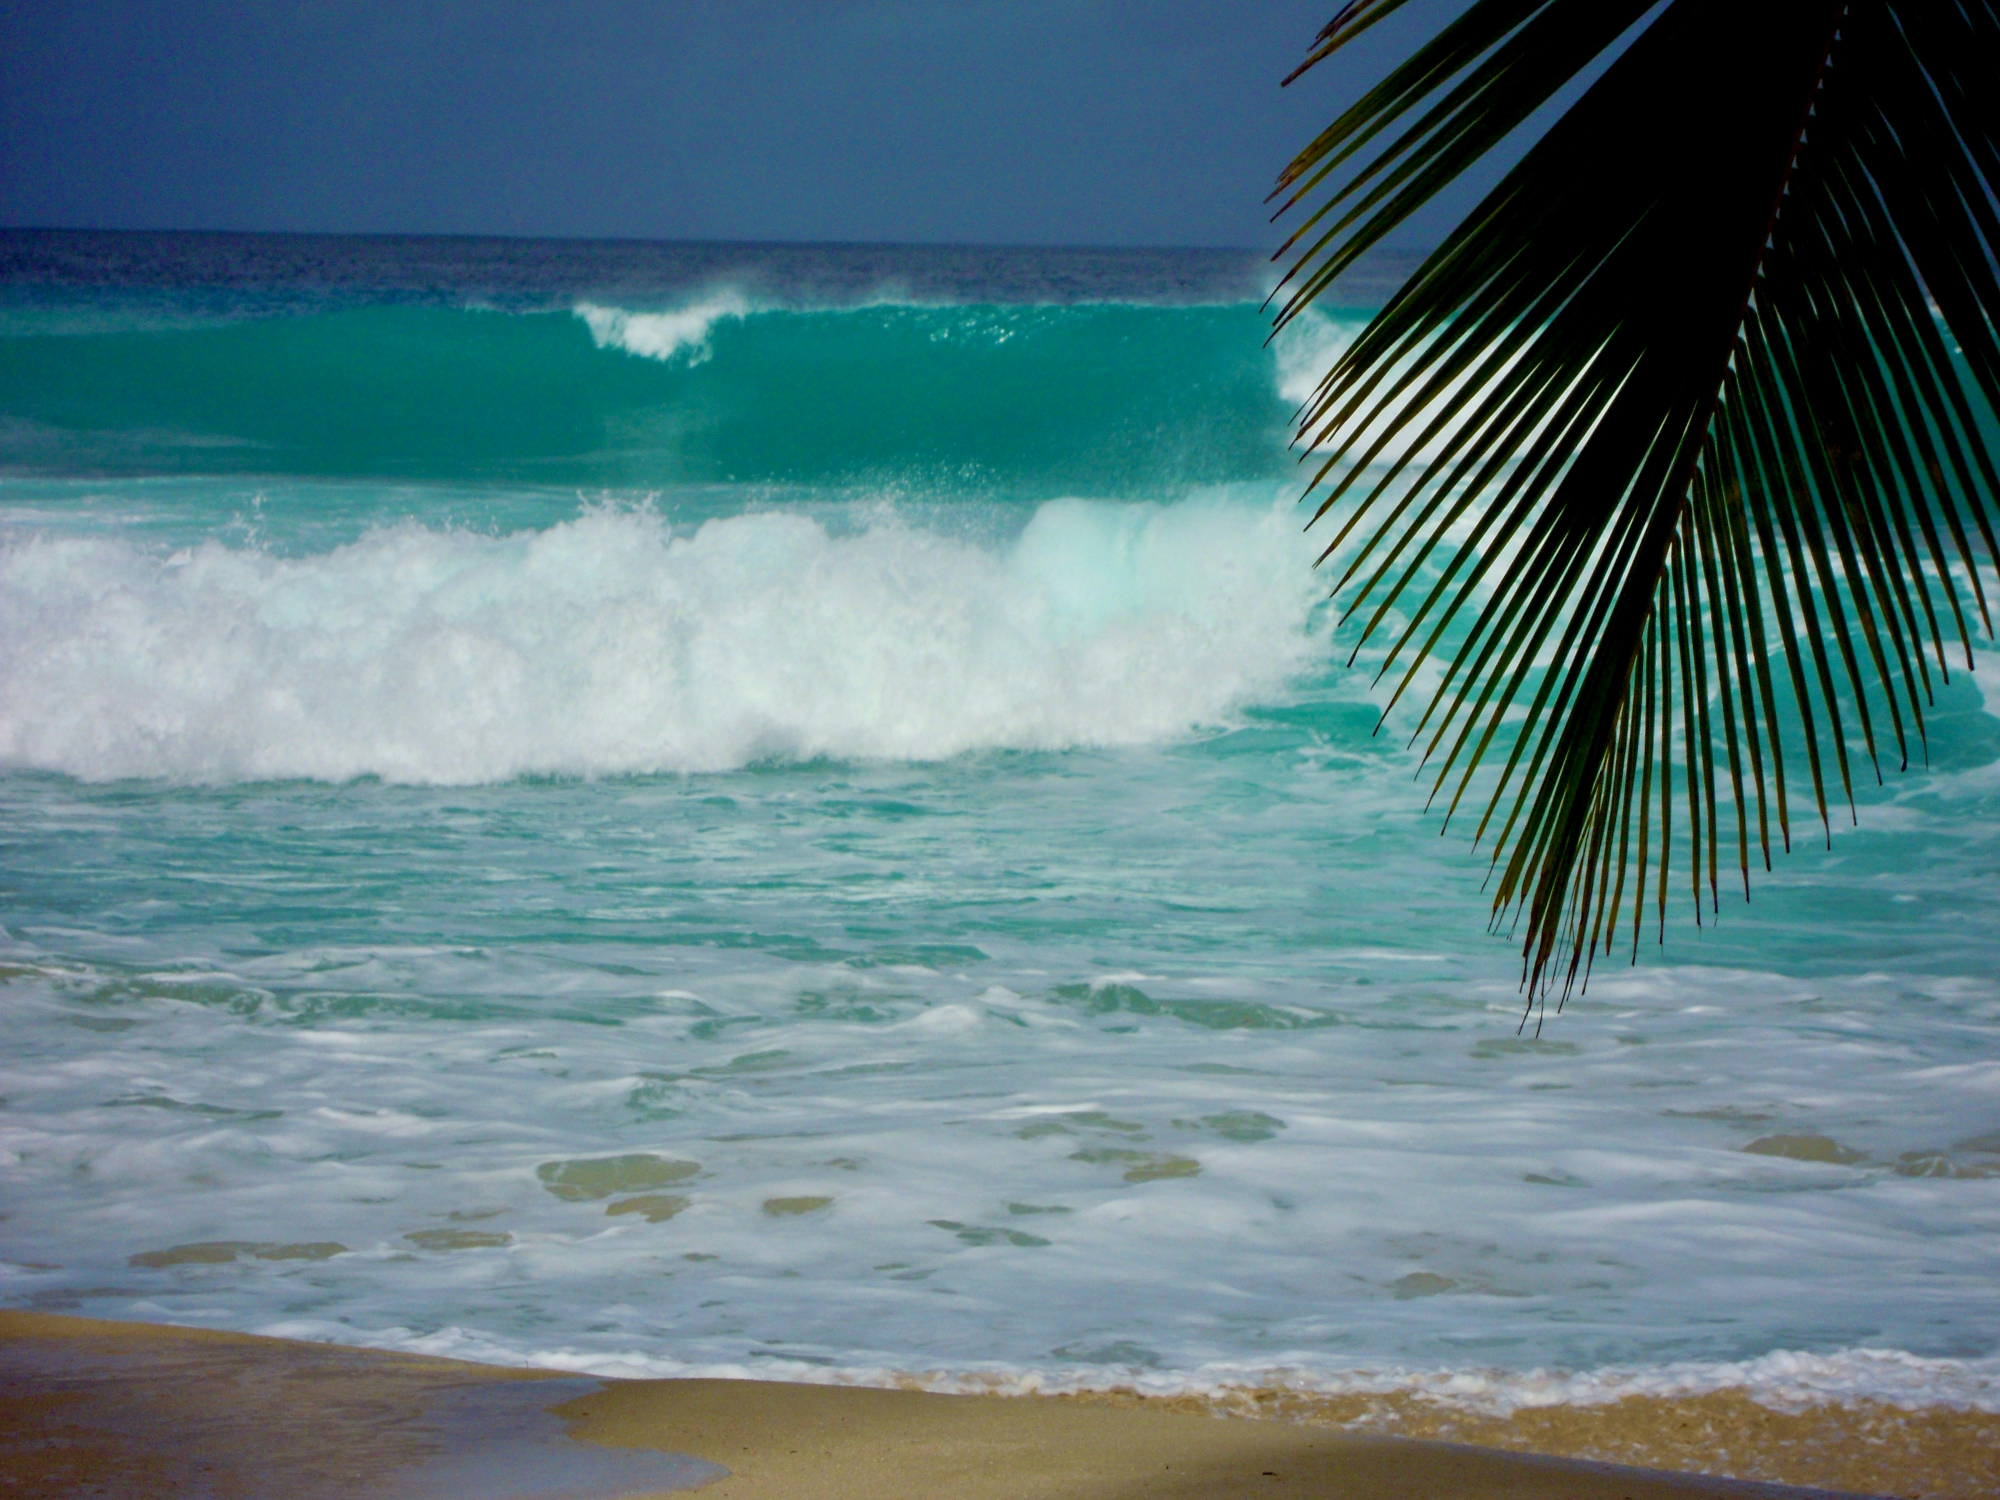 découvrez un road trip inoubliable à la barbade avec ses plages de sable fin, ses paysages magnifiques et sa culture vibrante. réservez dès maintenant votre aventure caribéenne.